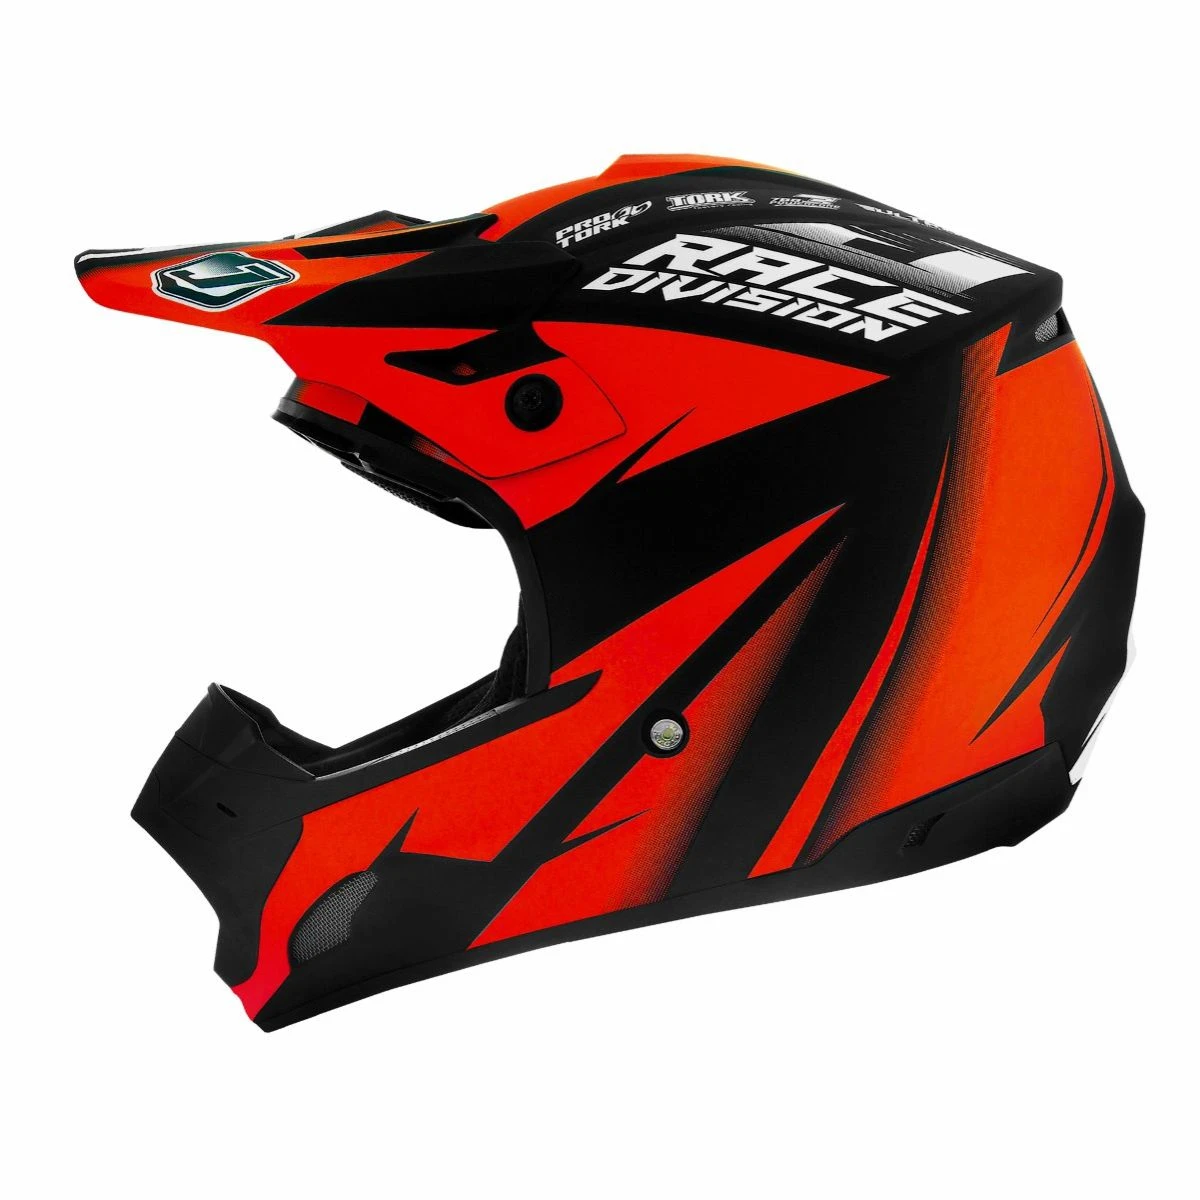 Capacete Motocross Infantil Jett Factory Edition Neon Kids - Vermelho